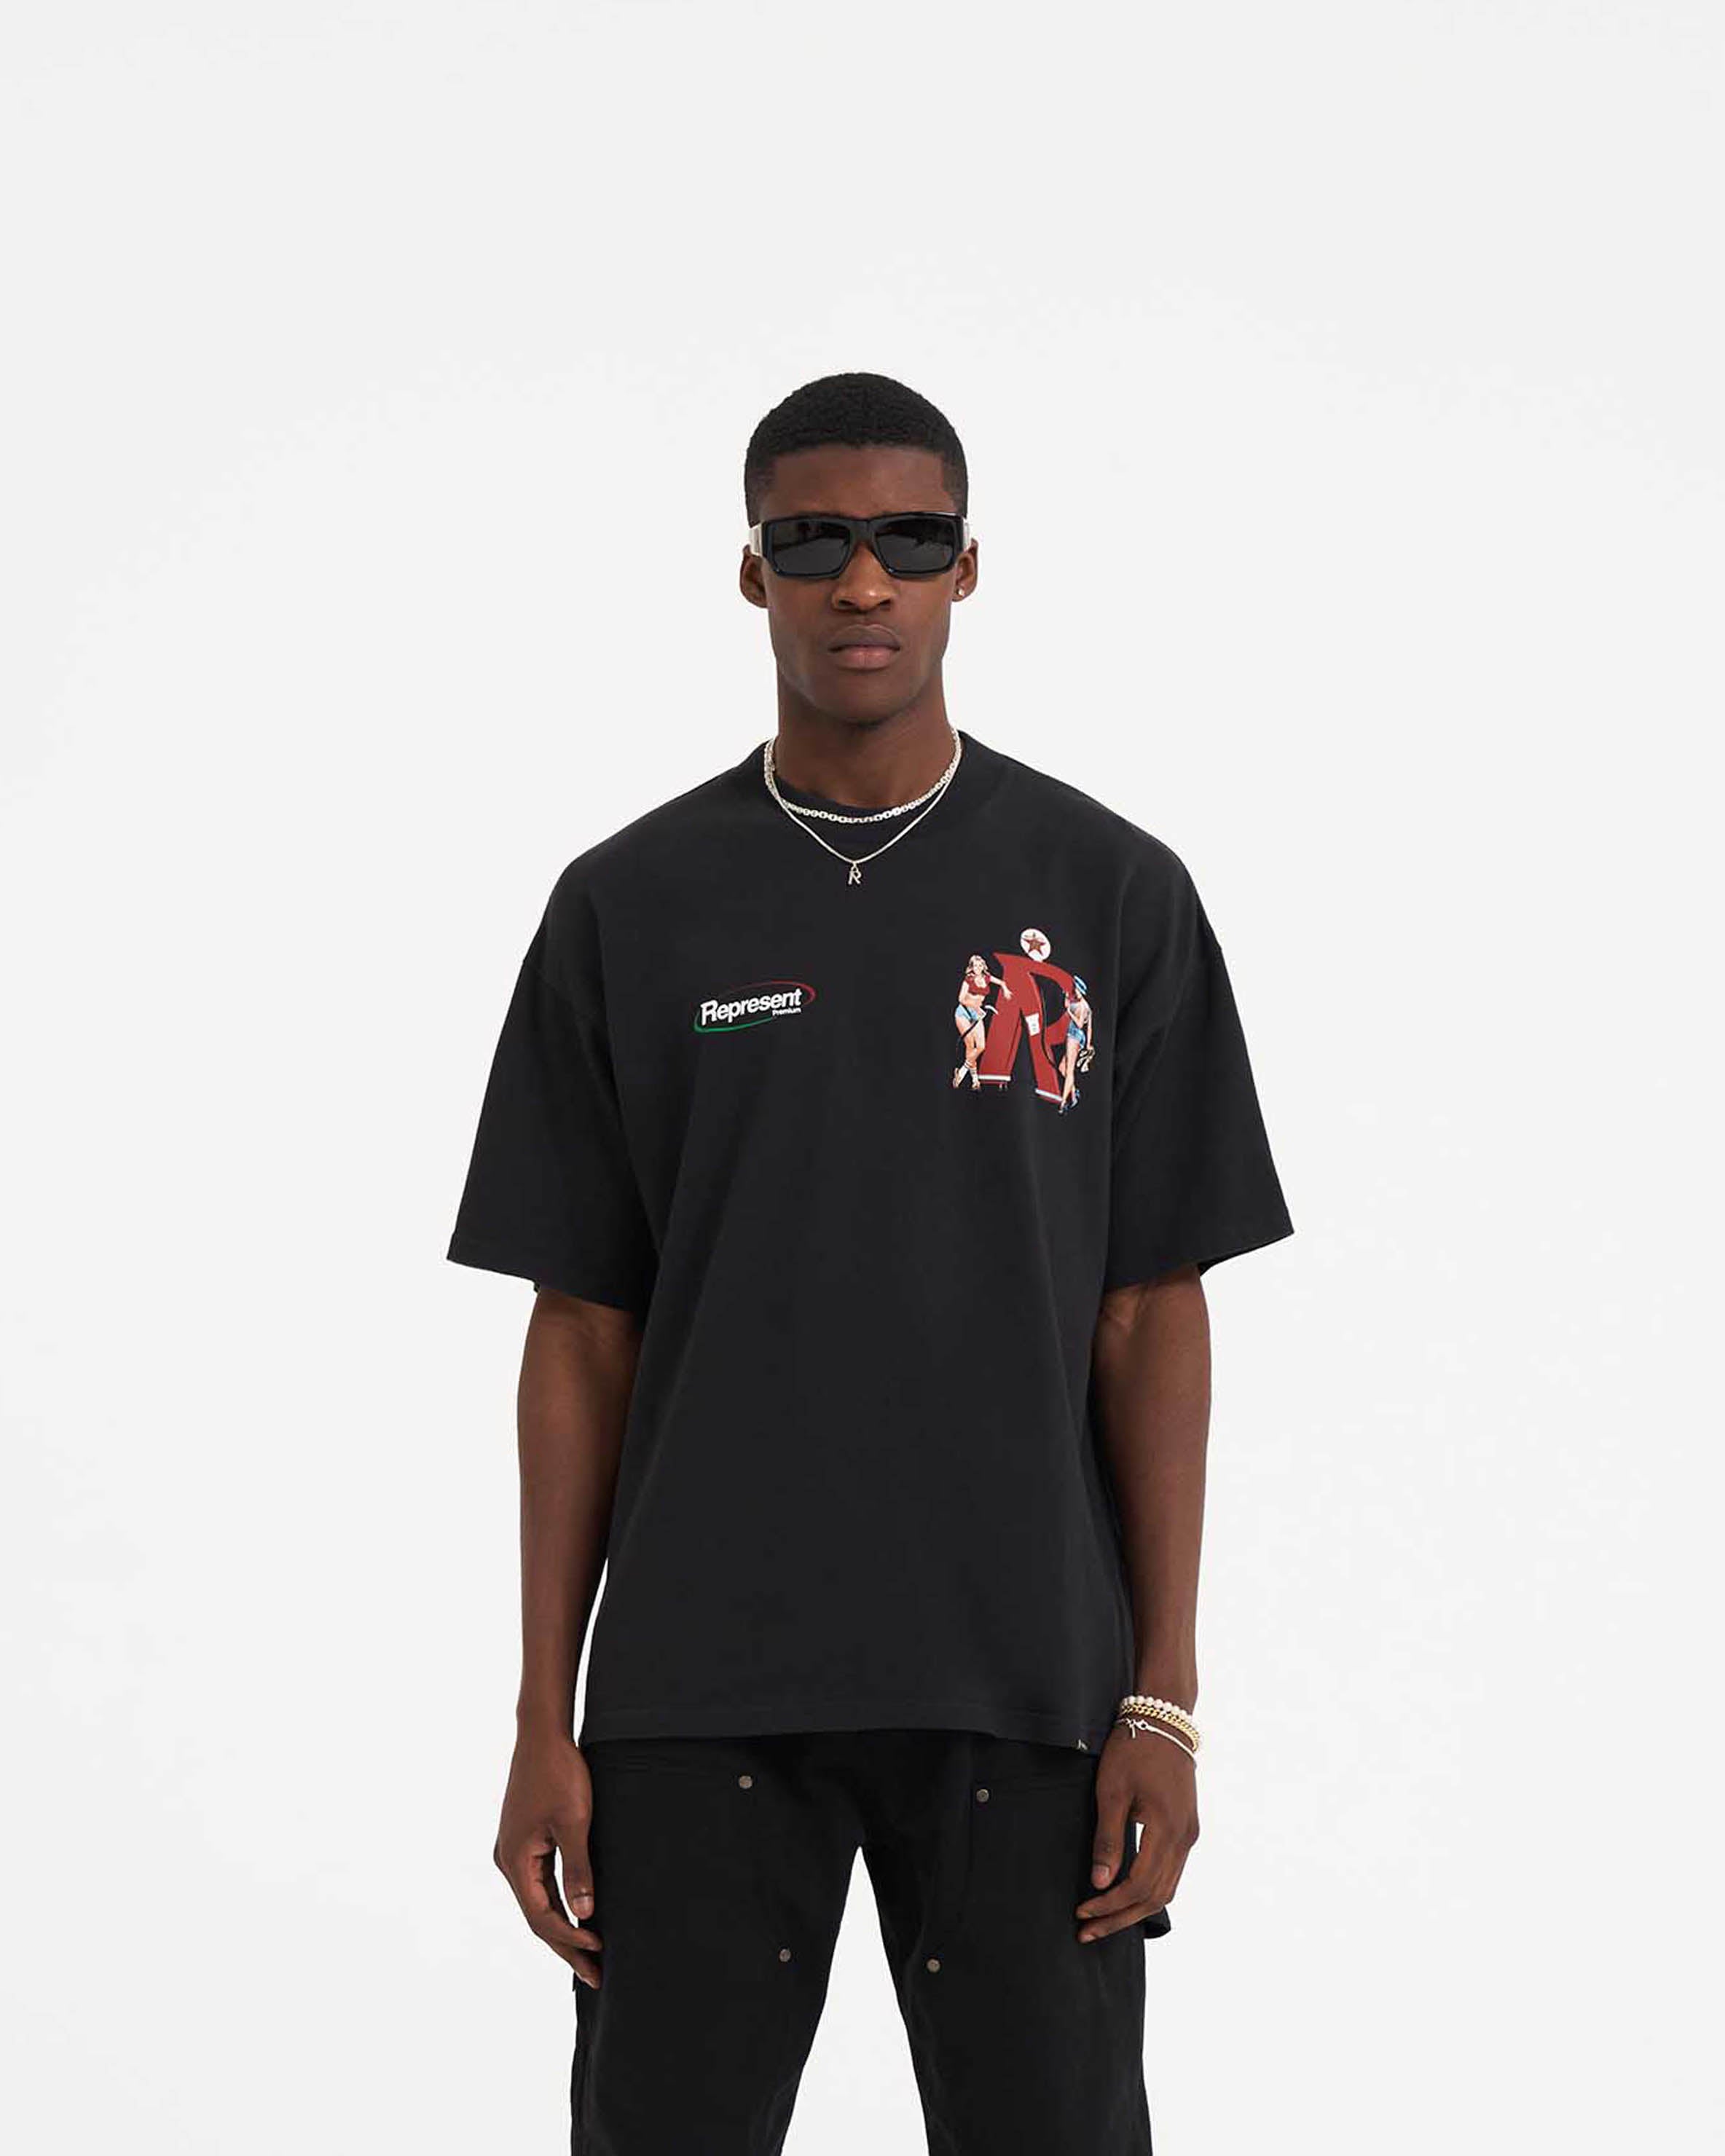 Represent Premium T-Shirt - Off Black